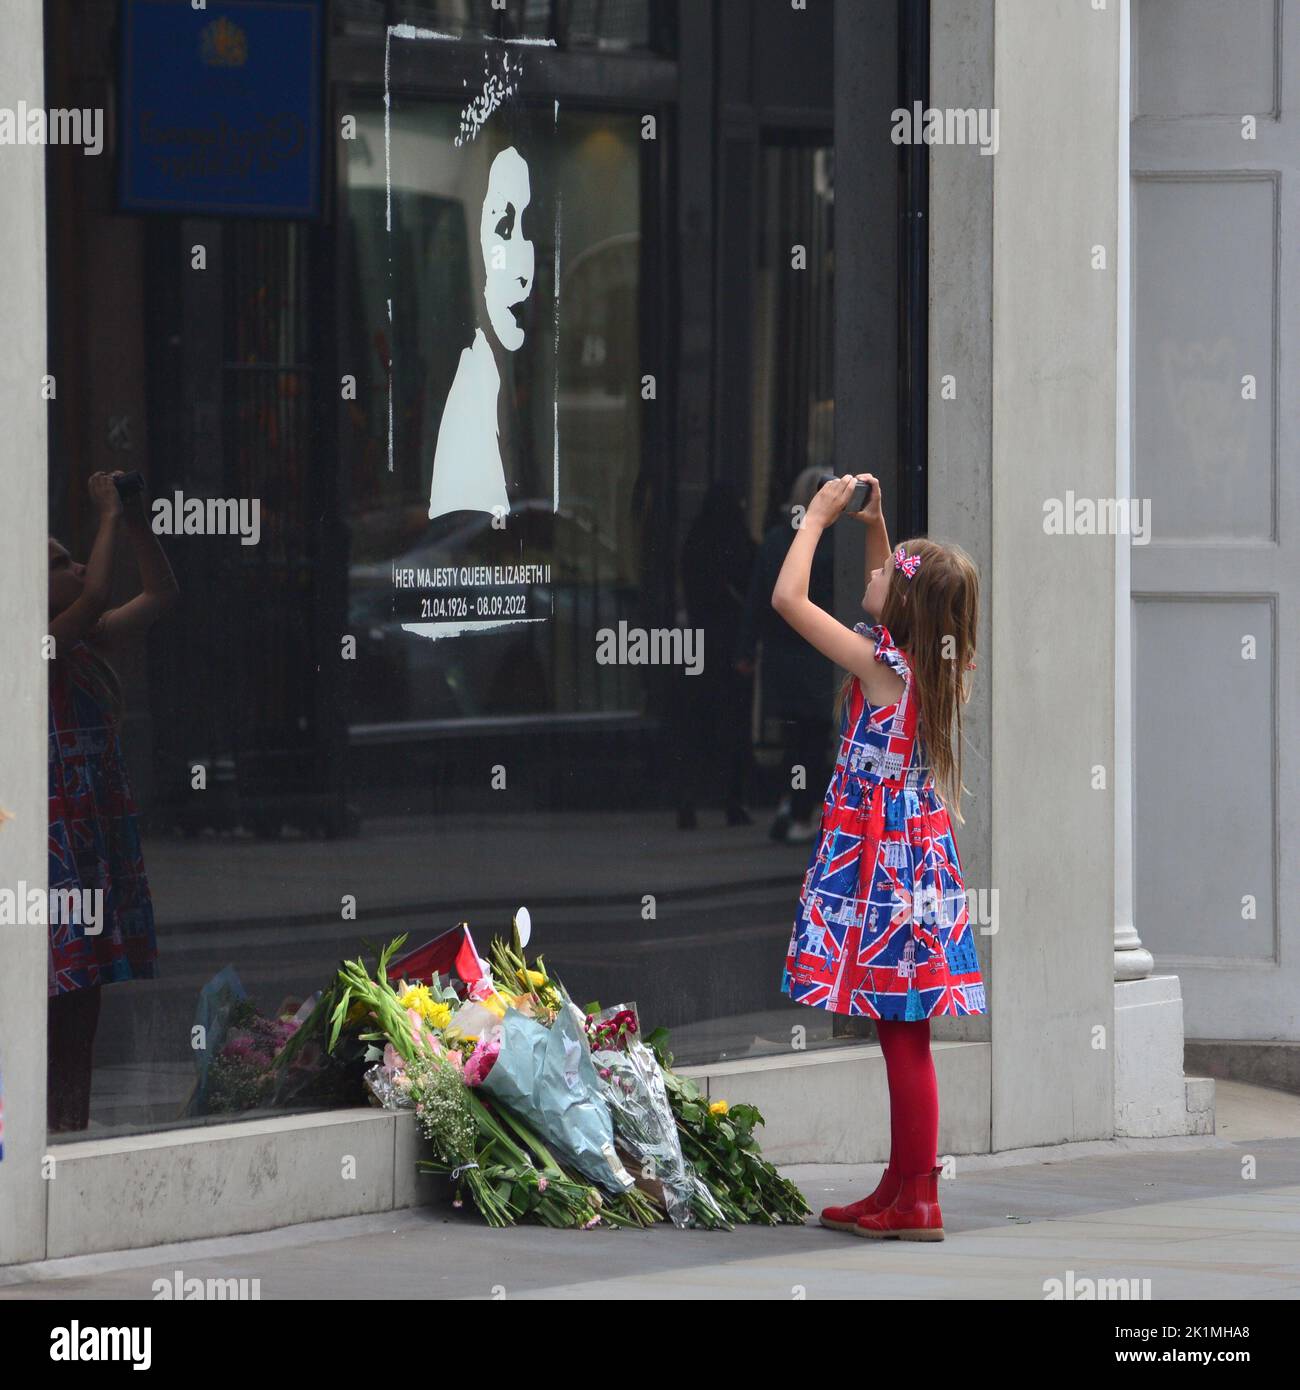 Funeral de Su Majestad la Reina Isabel II, Londres, Reino Unido, lunes 19th de septiembre de 2022. Una joven con un vestido de la bandera de la Unión tomando una fotografía de recuerdo de Su Majestad la Reina en un escaparate de la calle Old Bond Street. Foto de stock